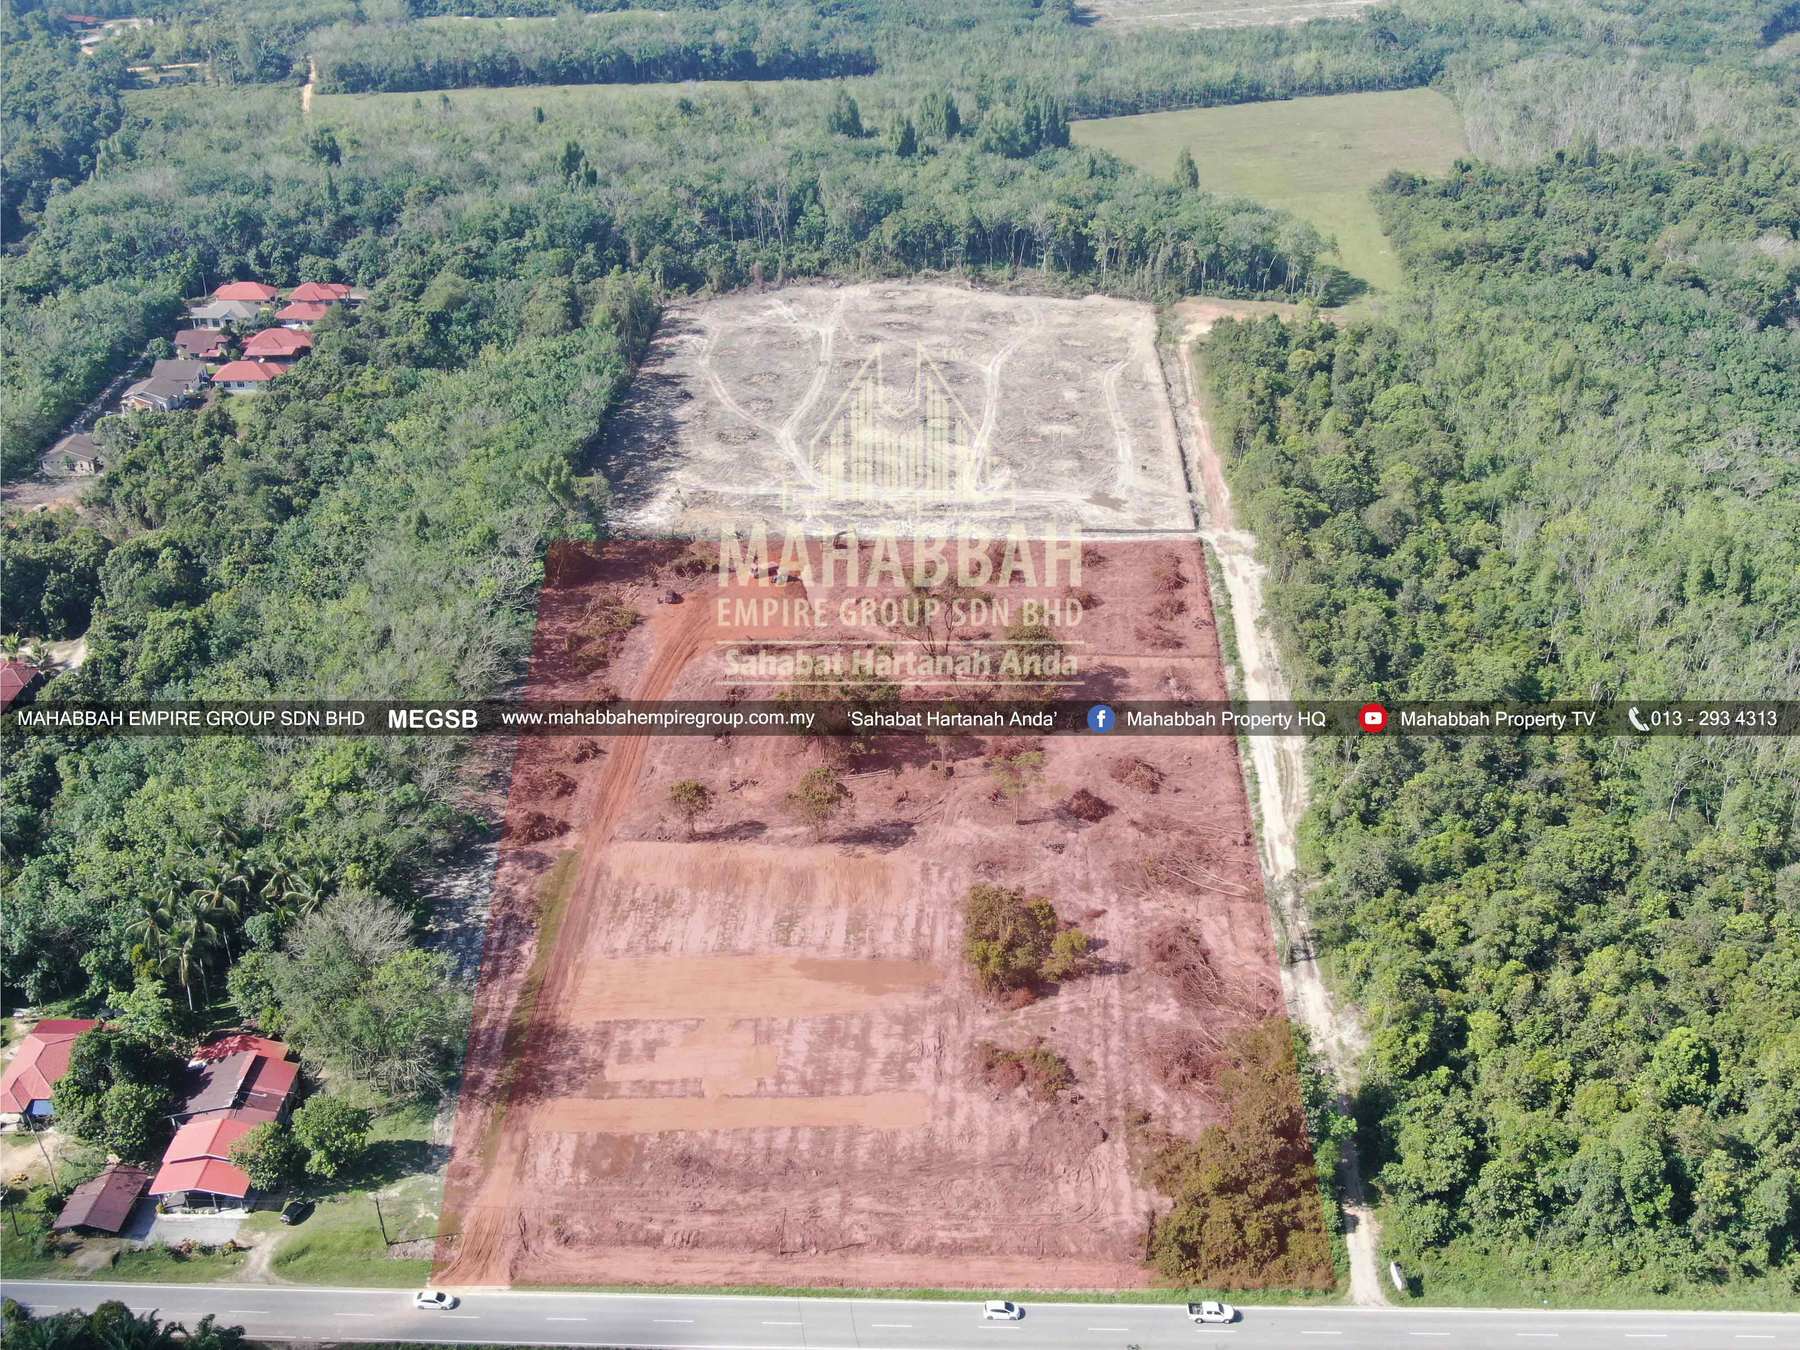 04 Tanah Lot Banglo Mampu Milik MEGSB Alor Pasir Tanah Merah (TM10)